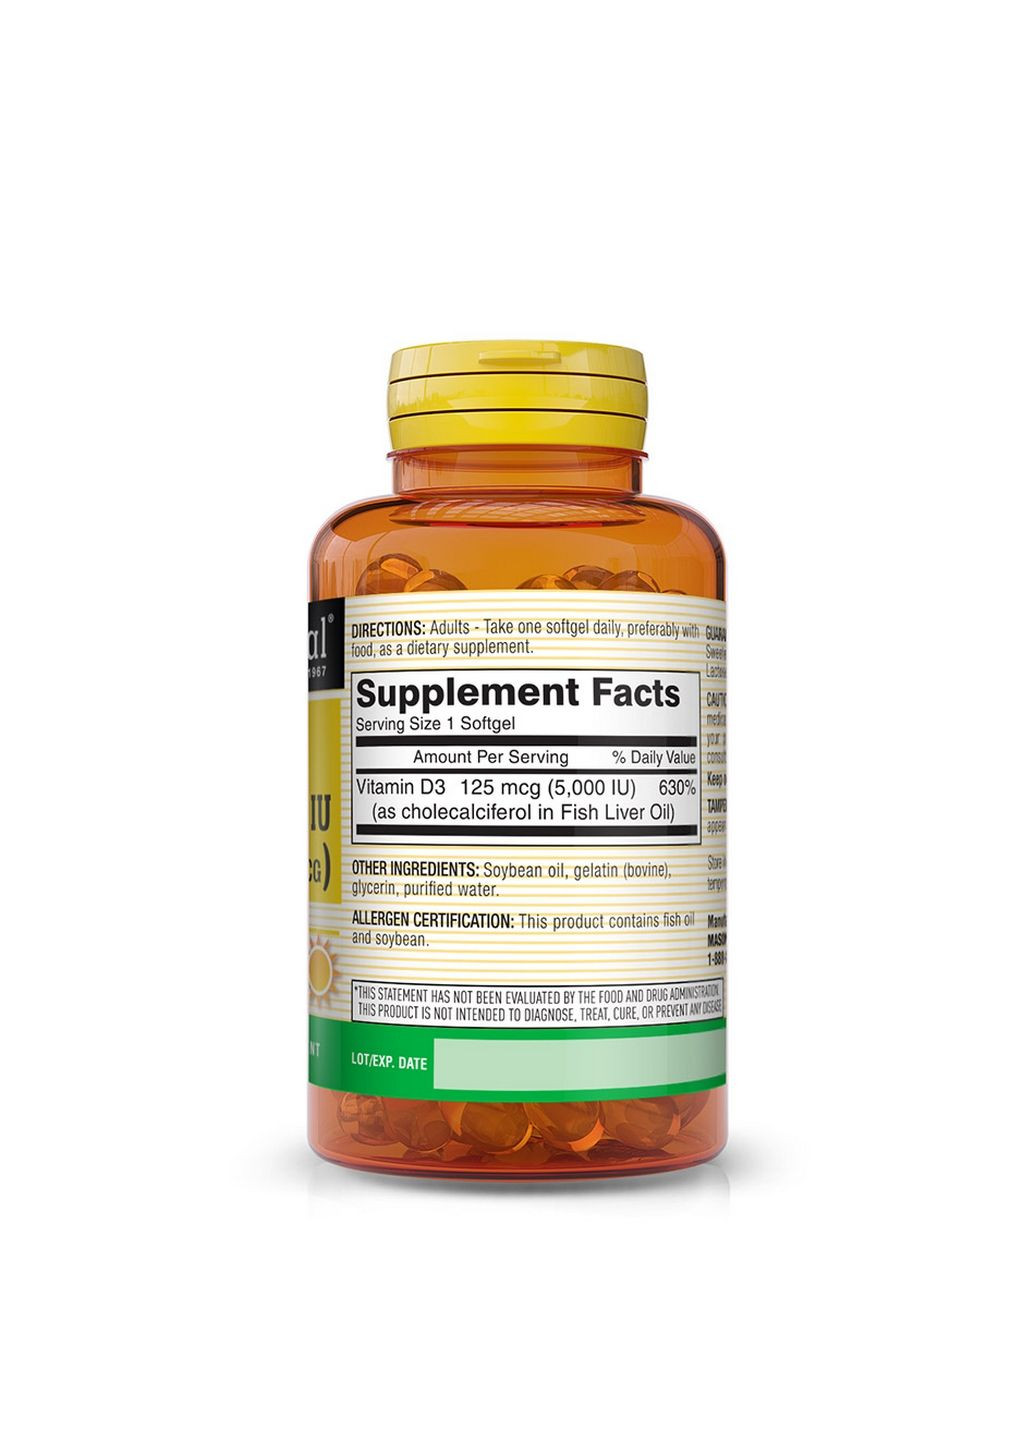 Витамины и минералы Vitamin D3 5000 IU, 50 капсул Mason Natural (293477499)